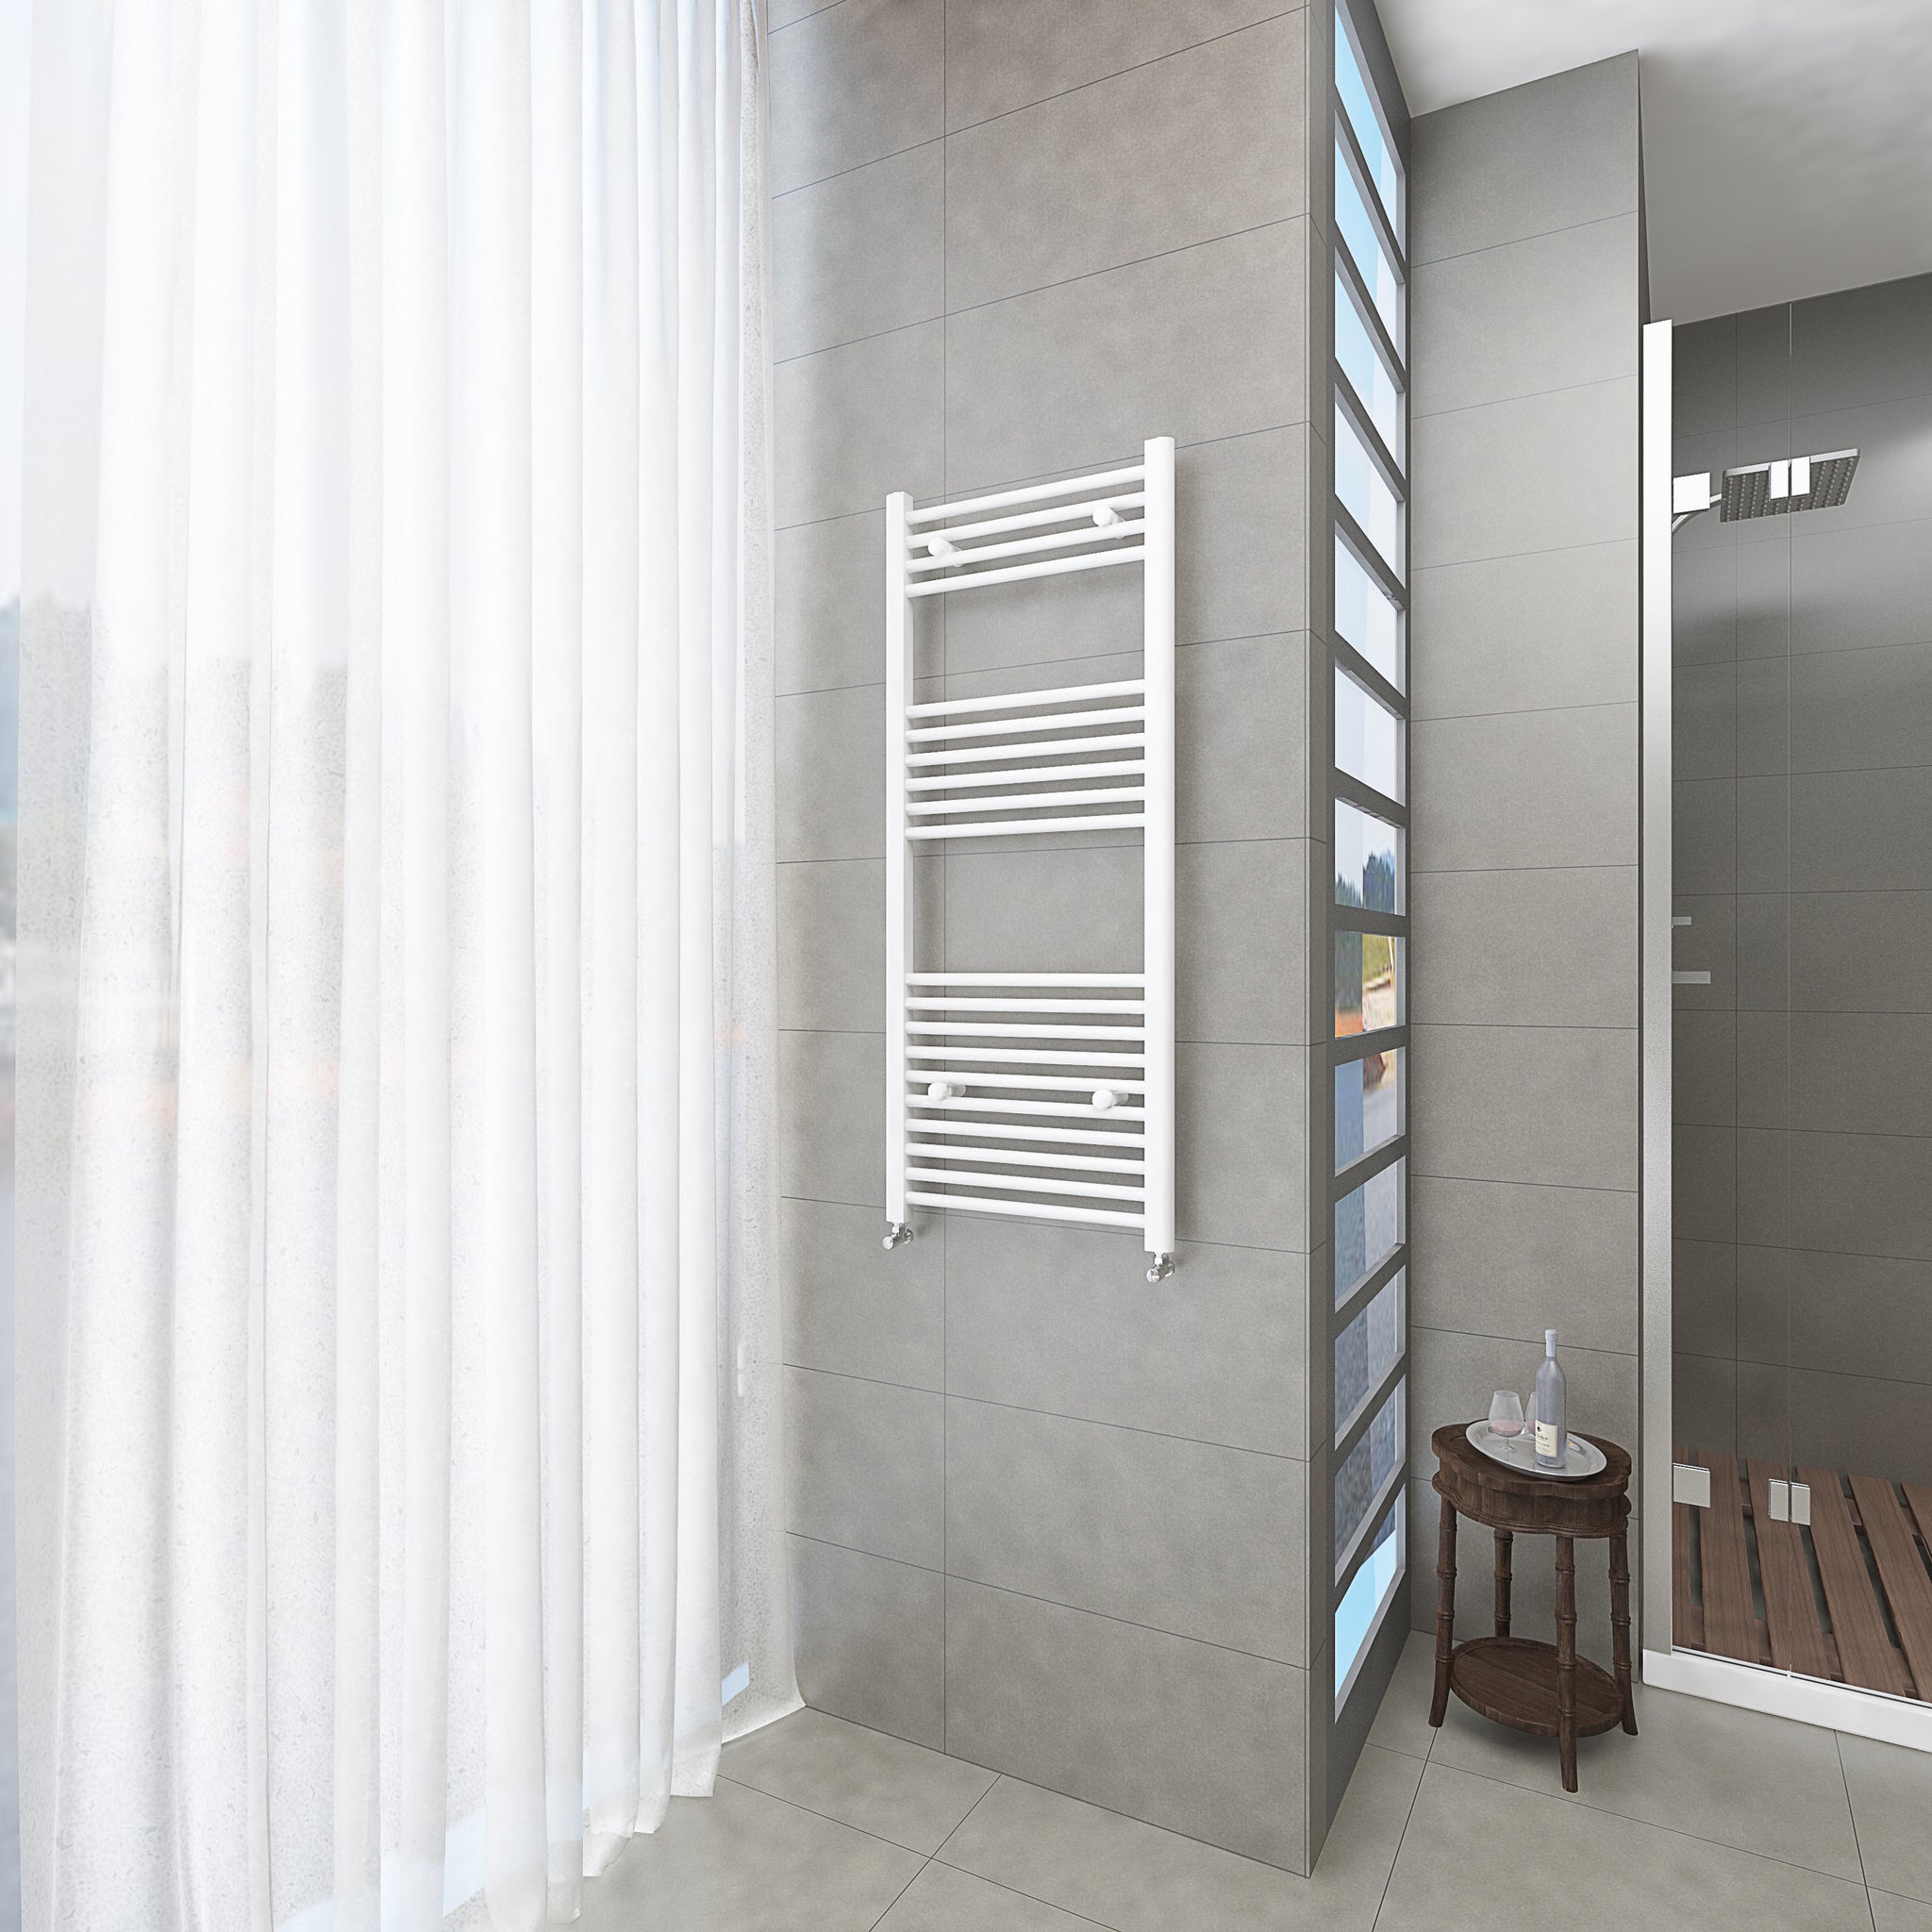 Badheizkörper Weiß - 120x50 CM Heizkörper und Handtuchtrockner in einem - Seitlicher Anschluss - Rauchfreie Kohleheizung für das Badezimmer